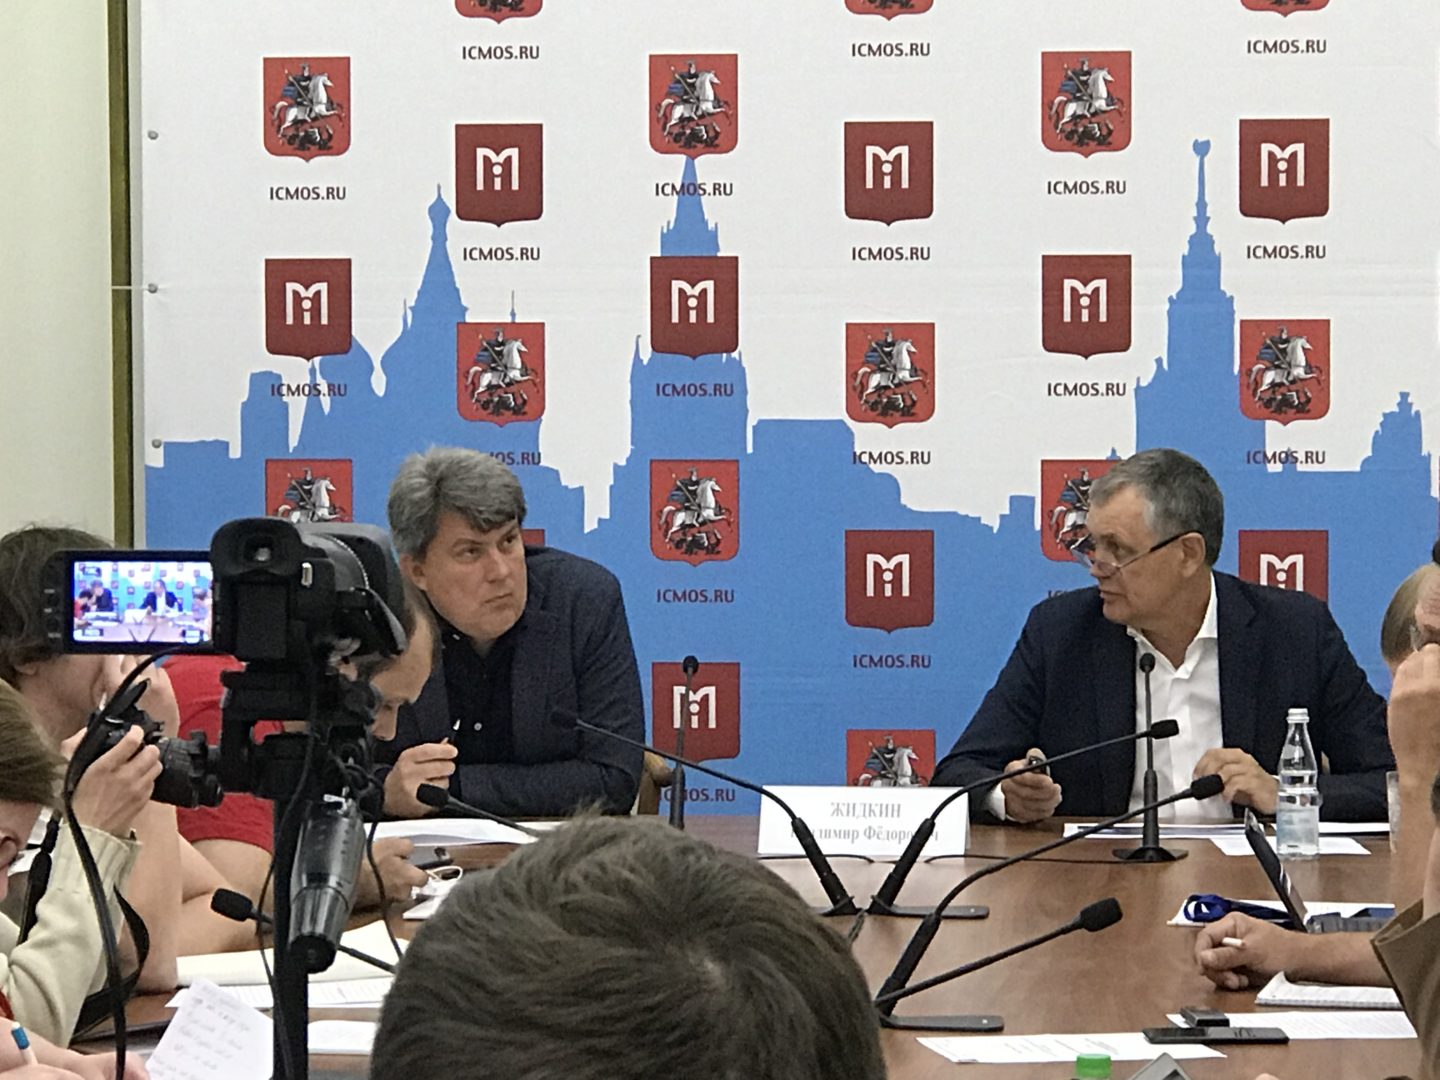 Пресс-конференция руководителя Департамента развития новых территорий города Москвы прошла в столице. Фото: Диана Кузьминых